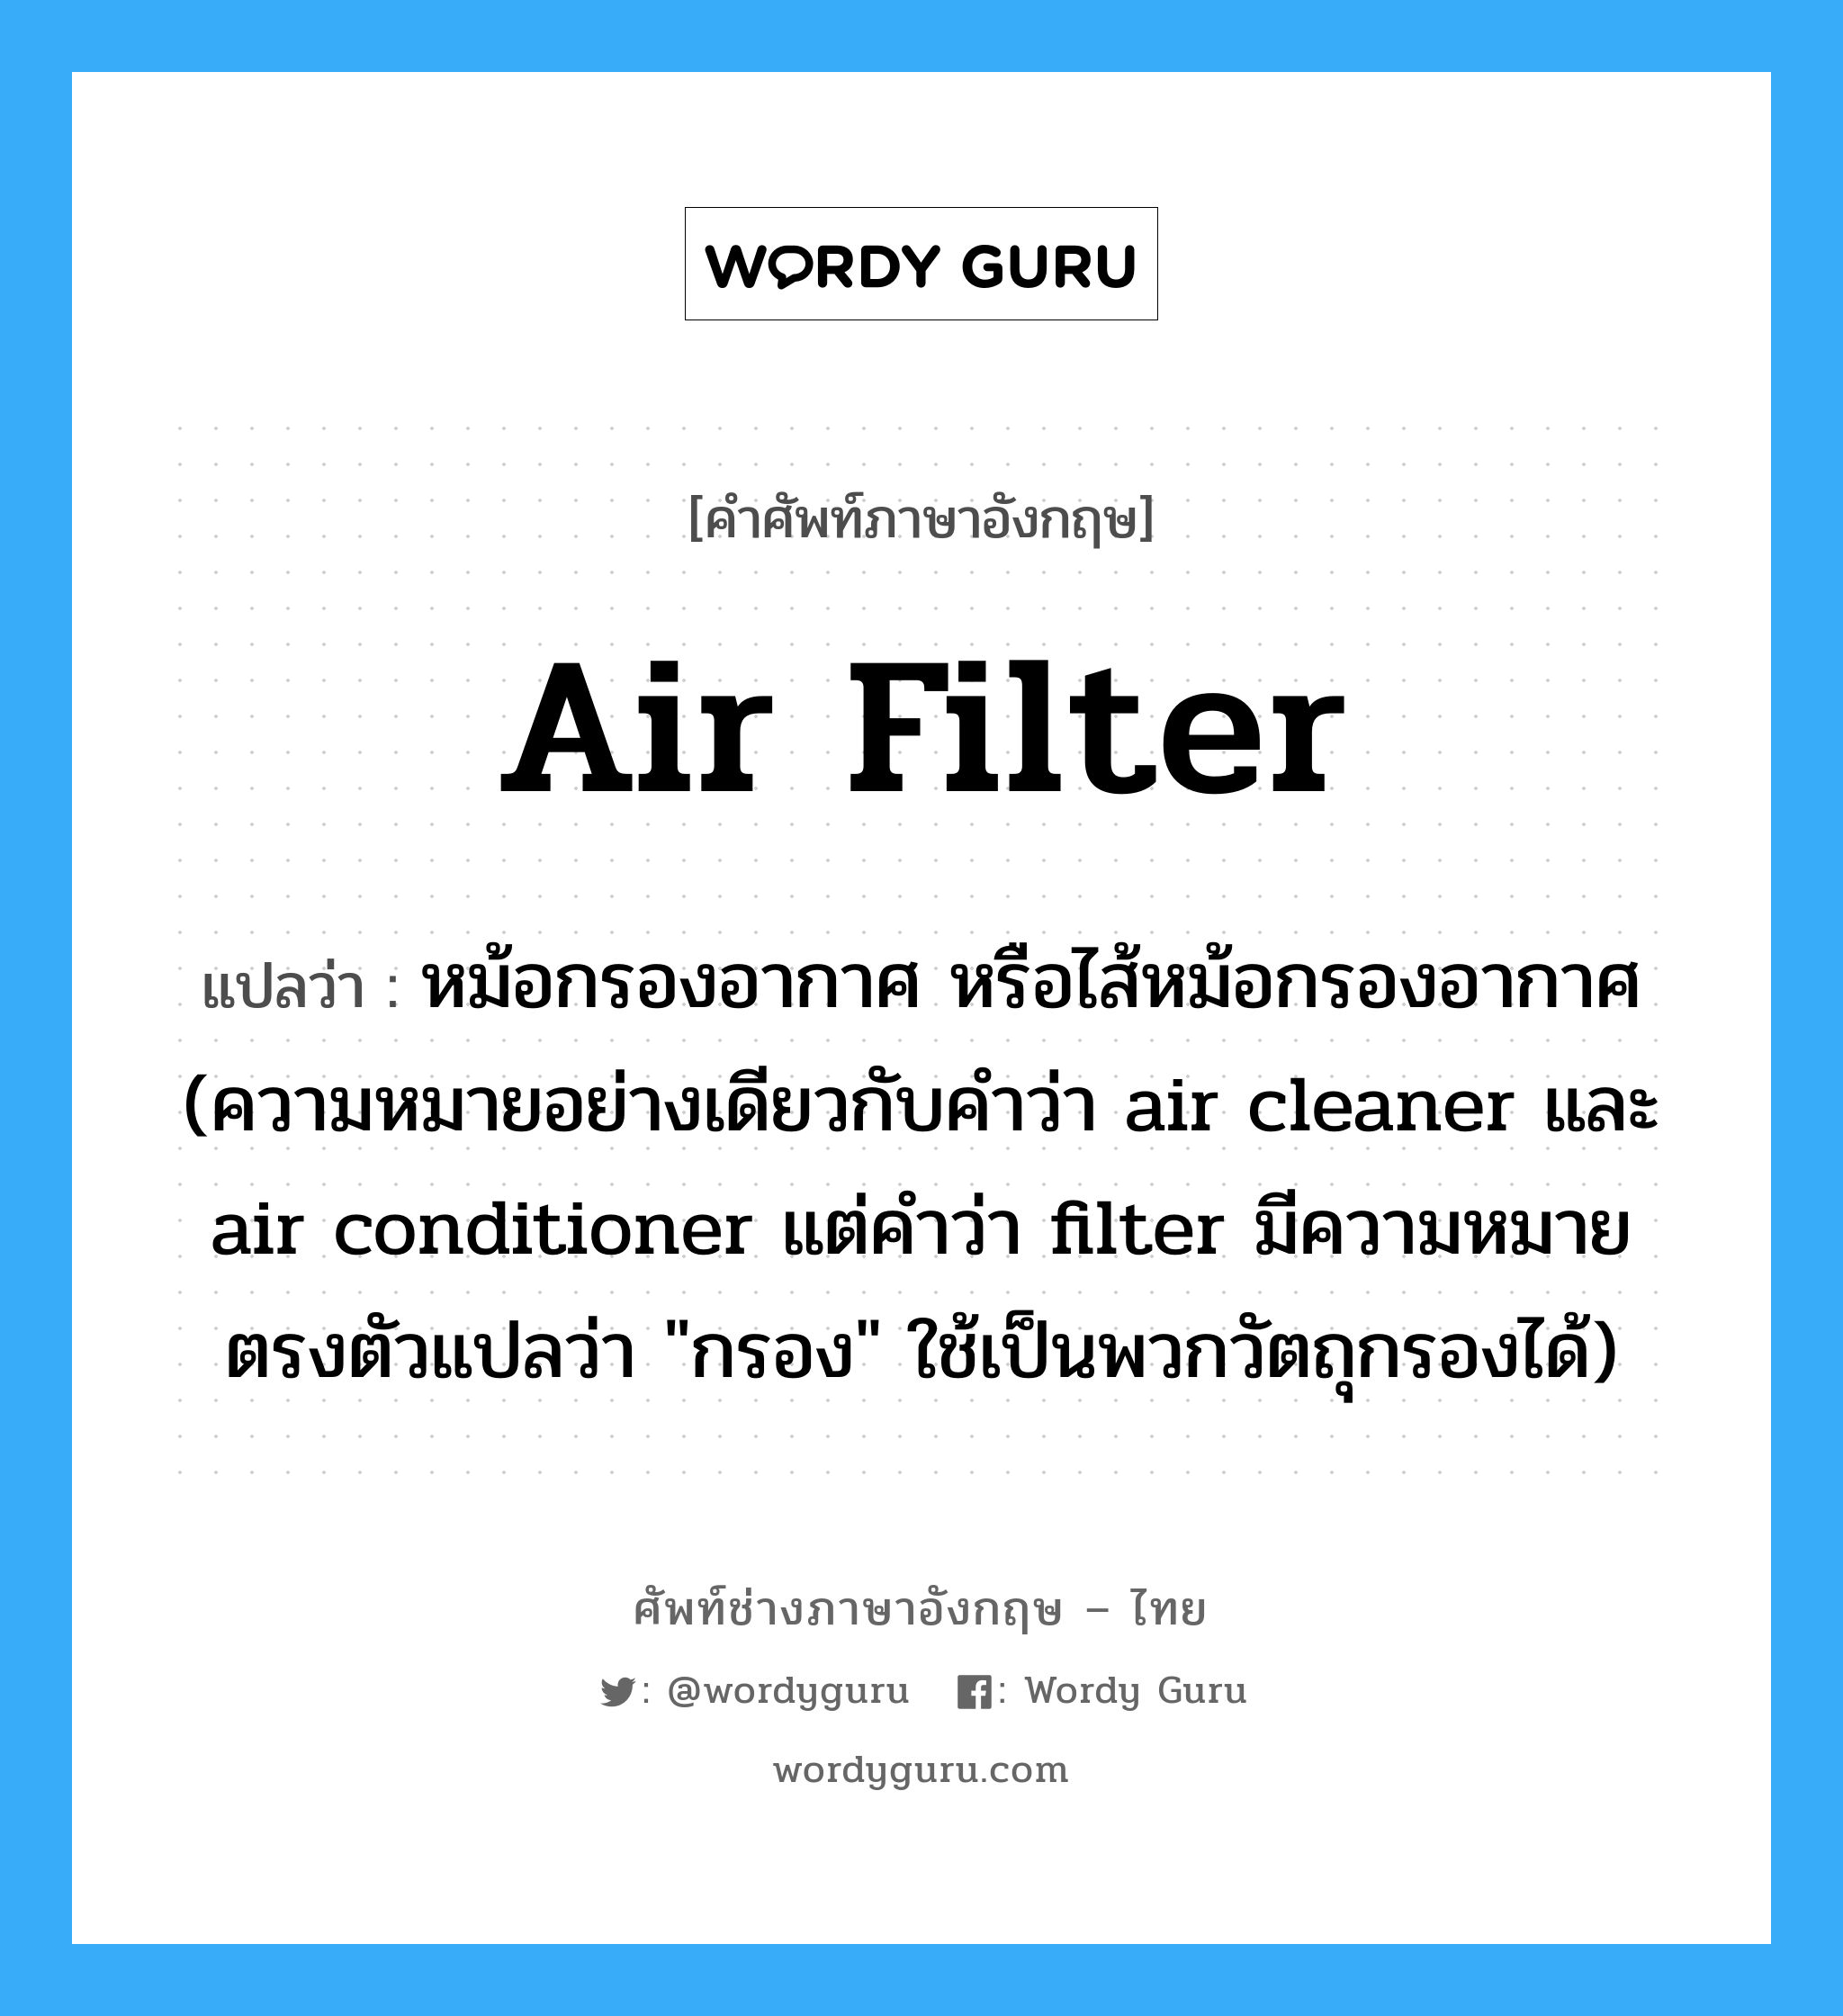 air filter แปลว่า?, คำศัพท์ช่างภาษาอังกฤษ - ไทย air filter คำศัพท์ภาษาอังกฤษ air filter แปลว่า หม้อกรองอากาศ หรือไส้หม้อกรองอากาศ (ความหมายอย่างเดียวกับคำว่า air cleaner และ air conditioner แต่คำว่า filter มีความหมายตรงตัวแปลว่า "กรอง" ใช้เป็นพวกวัตถุกรองได้)